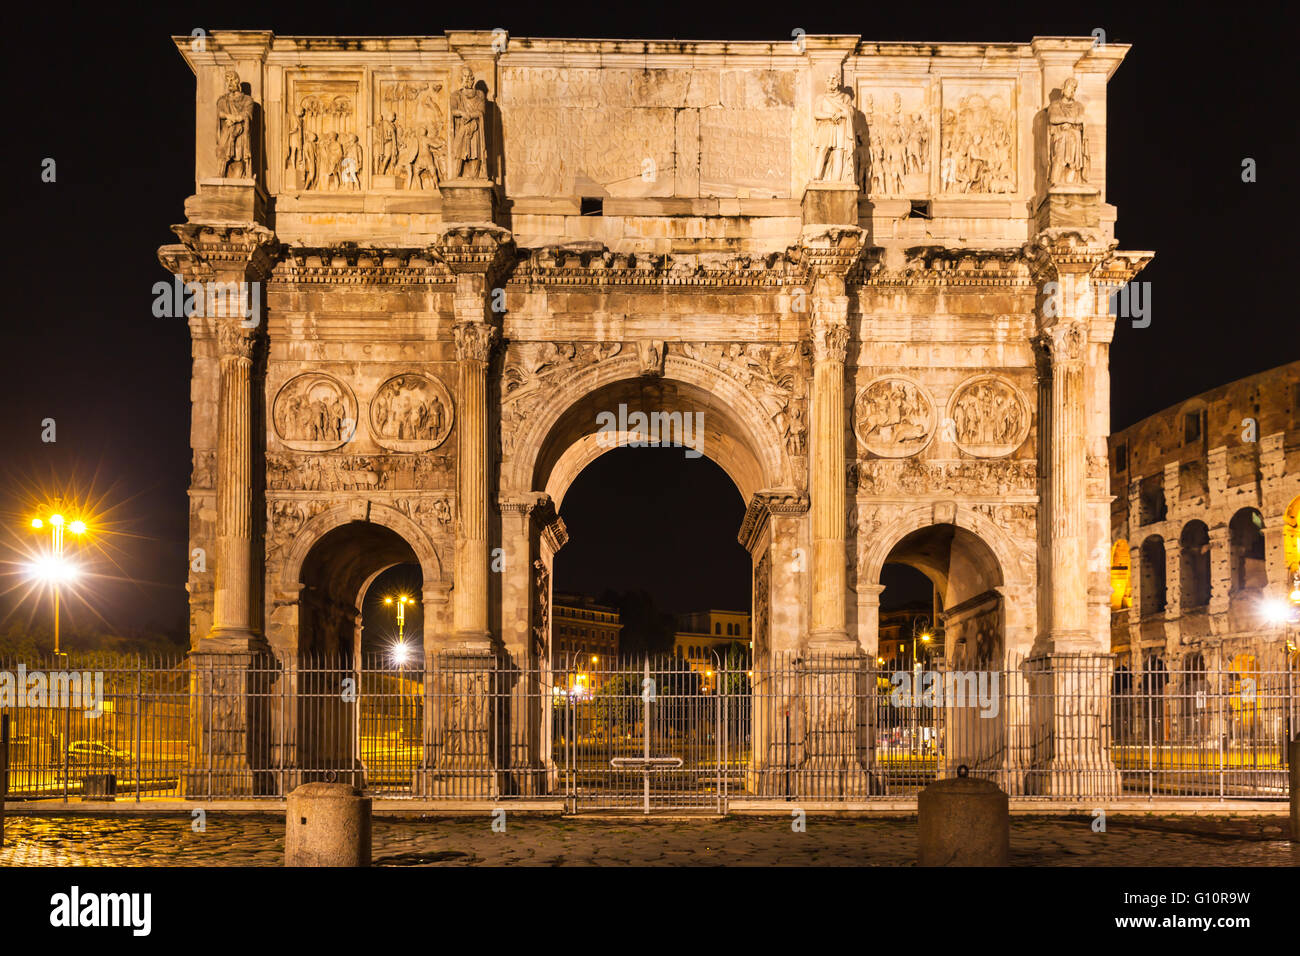 Vista notturna di Arco di Costantino vicino al Colosseo a Roma, Italia Foto Stock